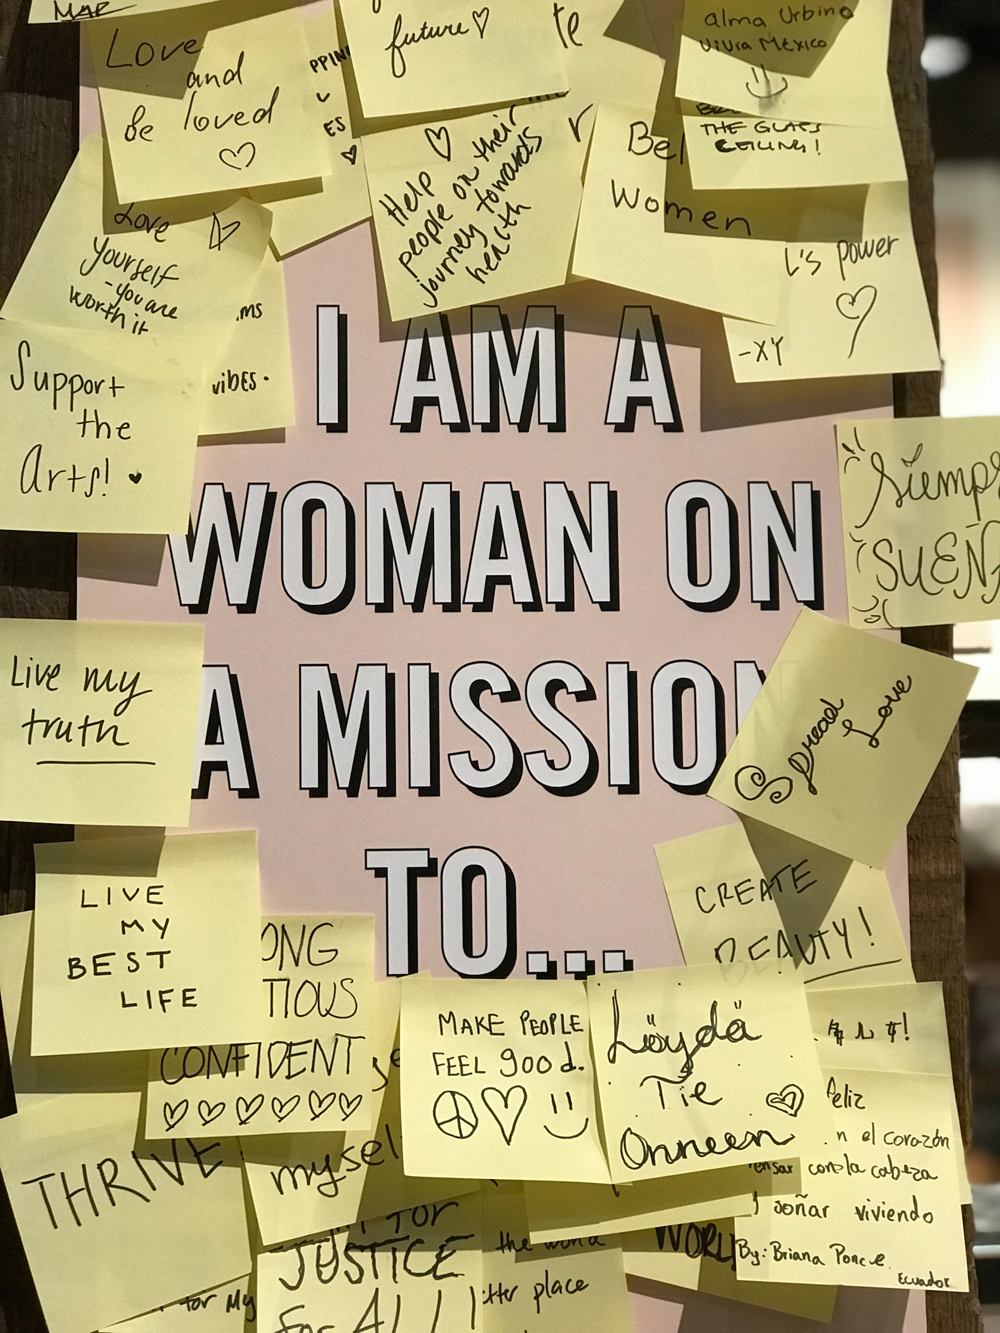 Poster de fundo rosa com a frase em inglês "I am a woman on a mission to..." e cercado por vários post-its contendo mensagens de positividade.